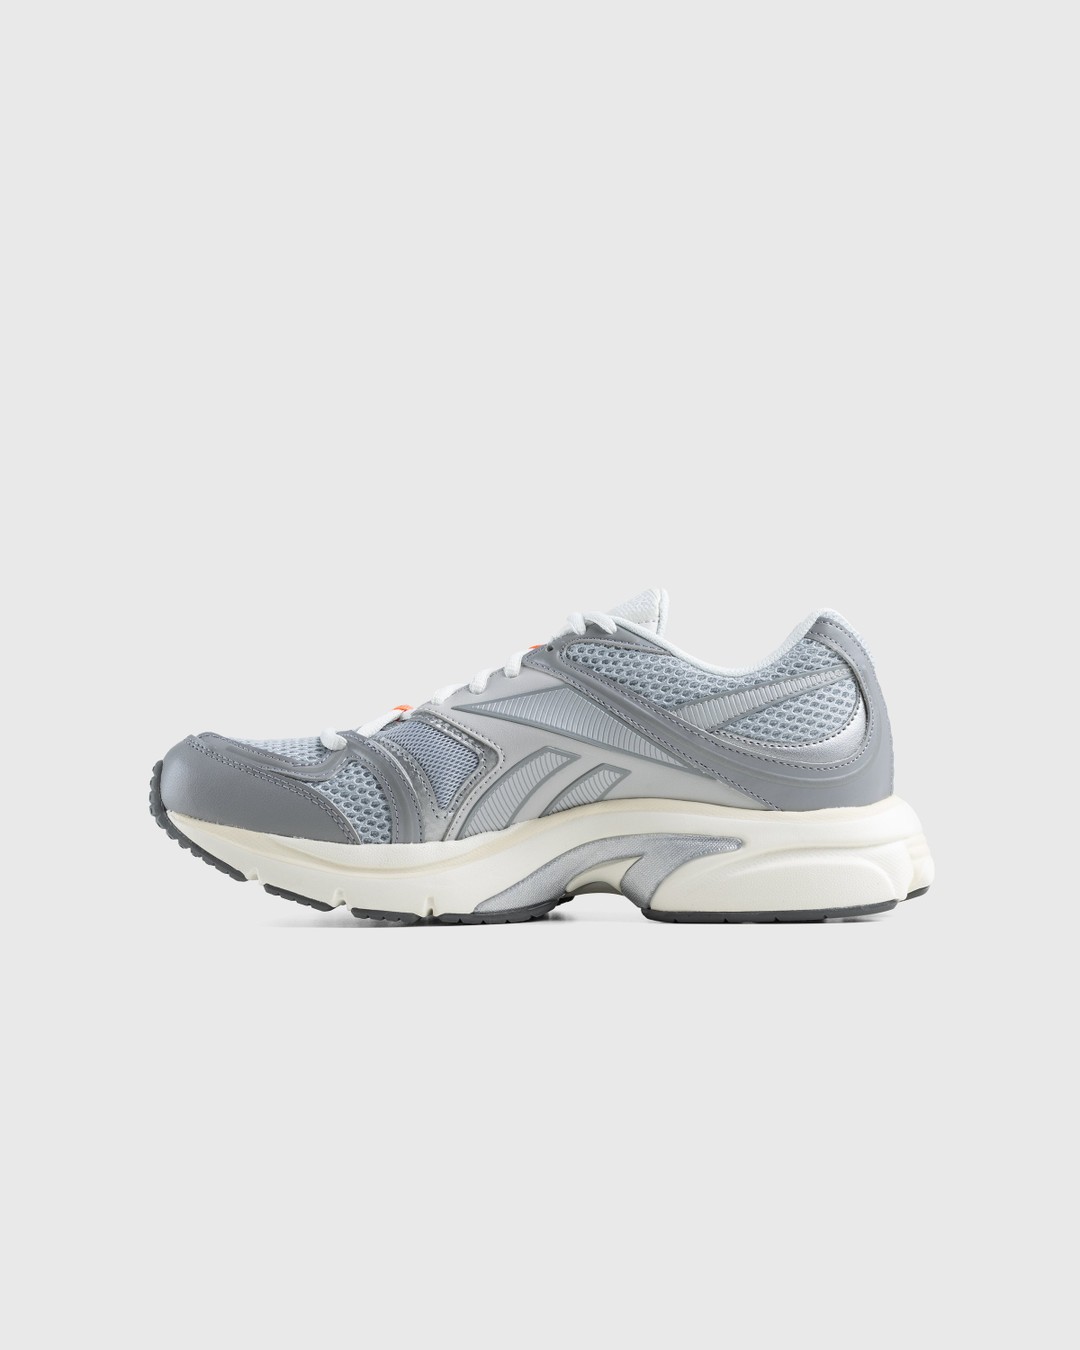 Reebok – Premier Road Plus VI Grey - Low Top Sneakers - Grey - Image 3